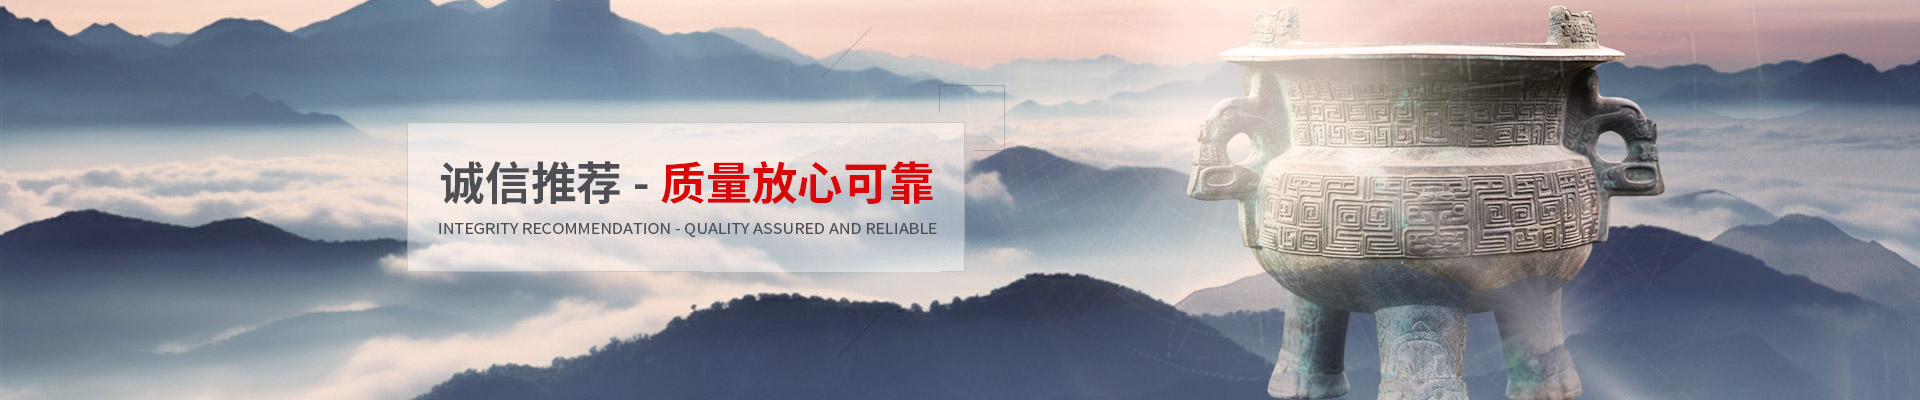 上海视界纵横智能科技有限公司公司介绍